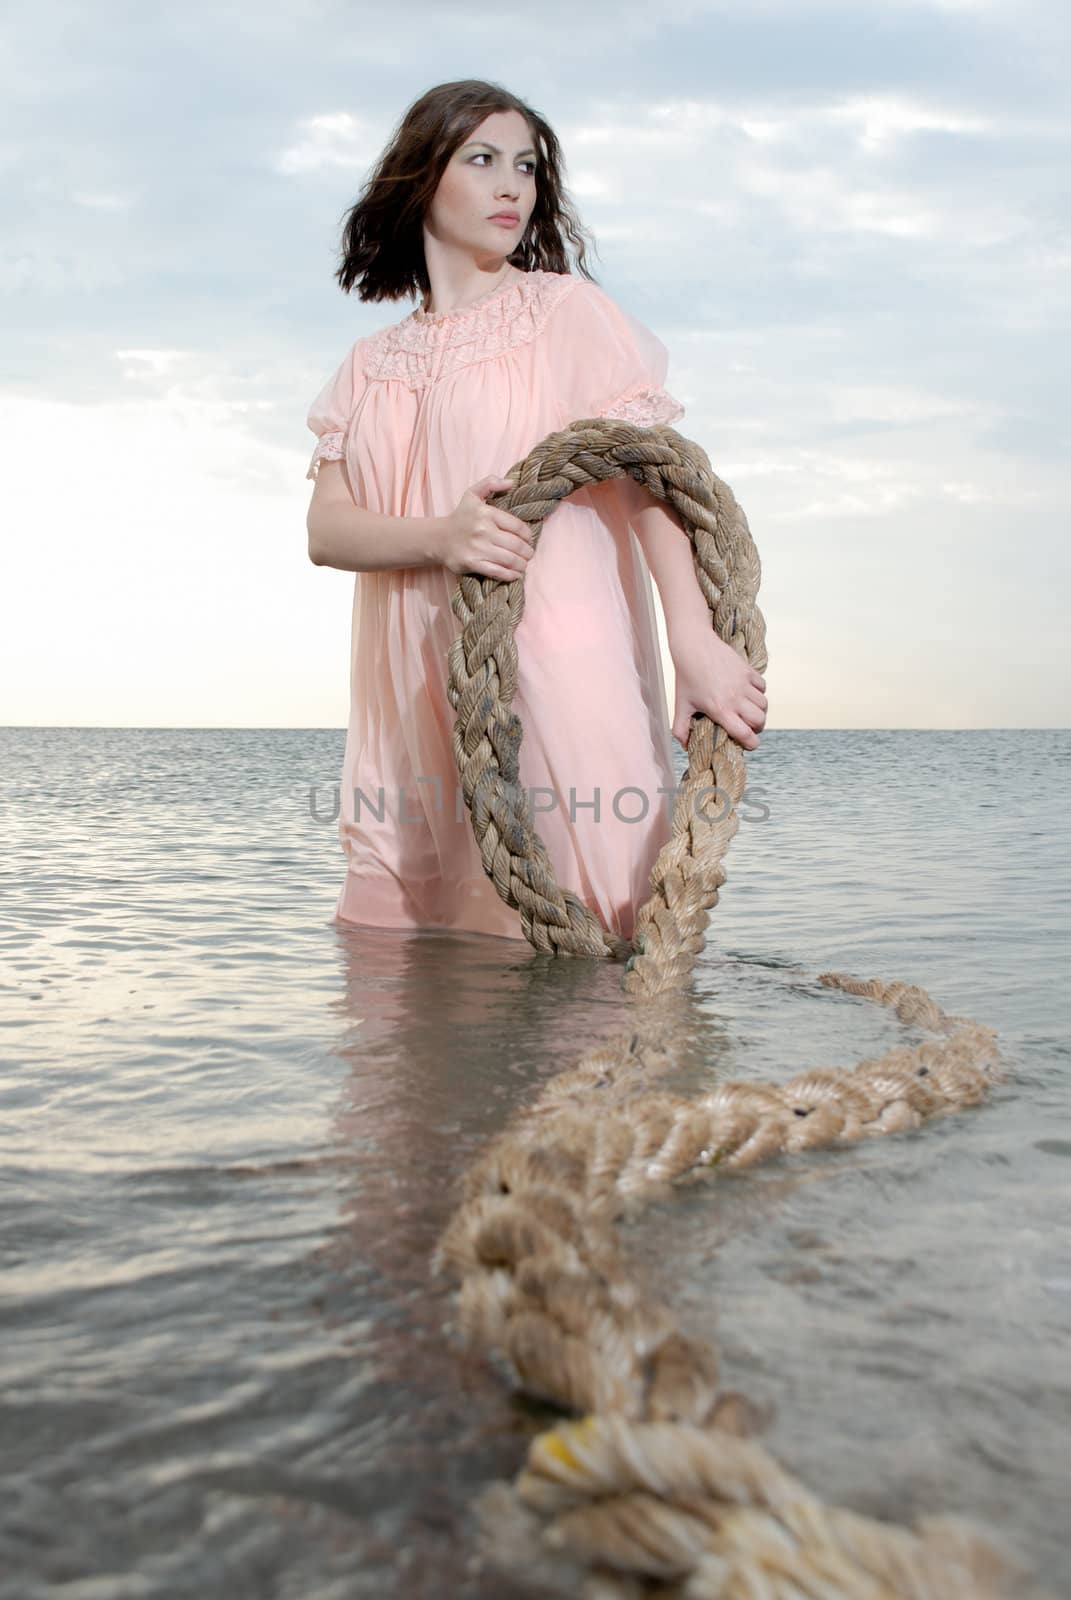 Concept Woman in Ocean by stevart